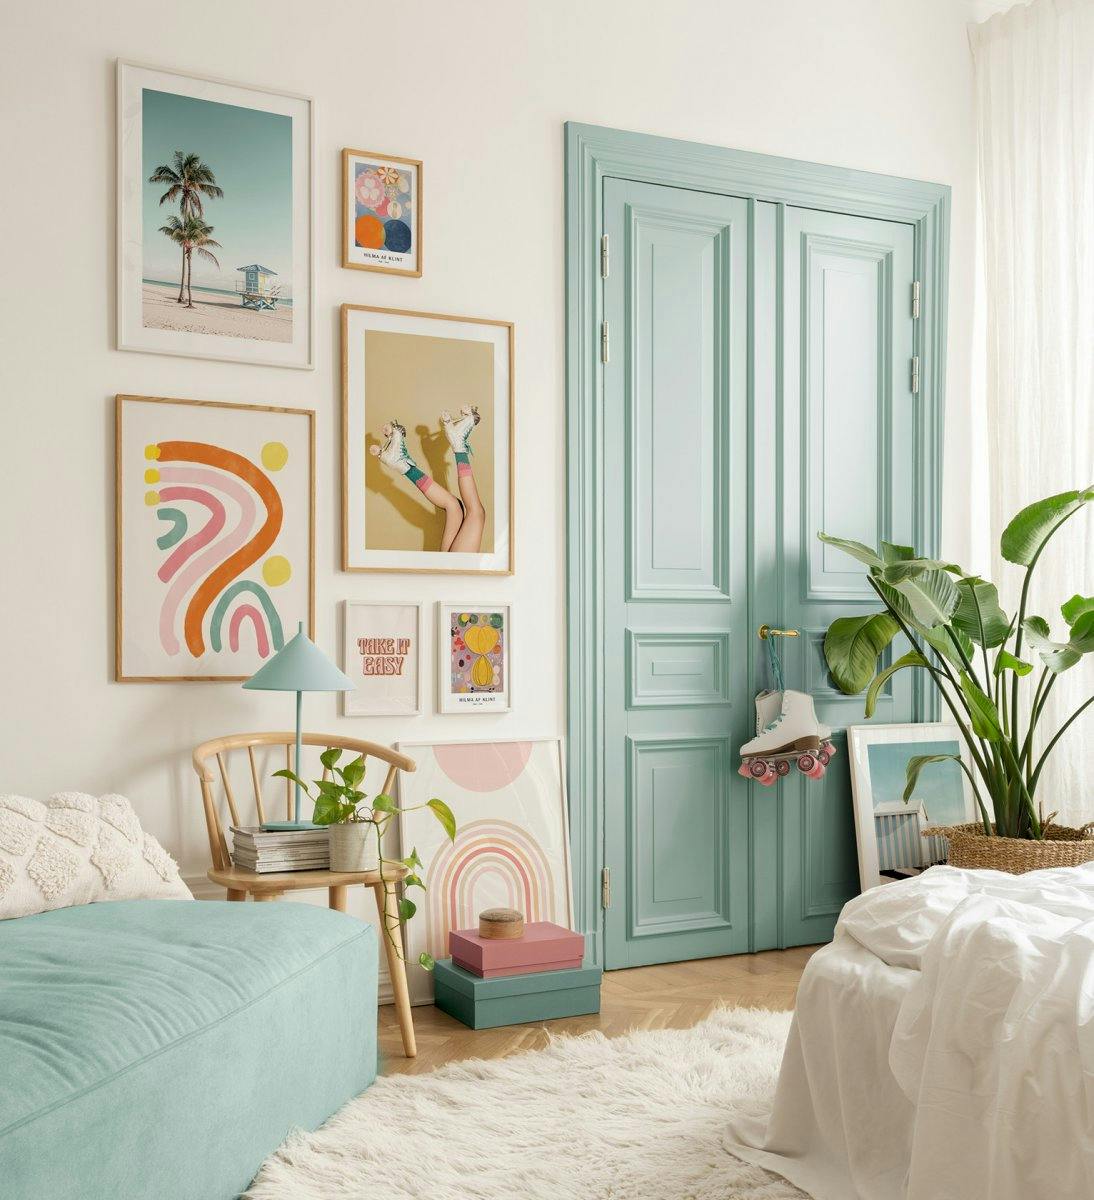 Pósters fotografías y citas en colores alegres para un ambiente retro en el salón o dormitorio